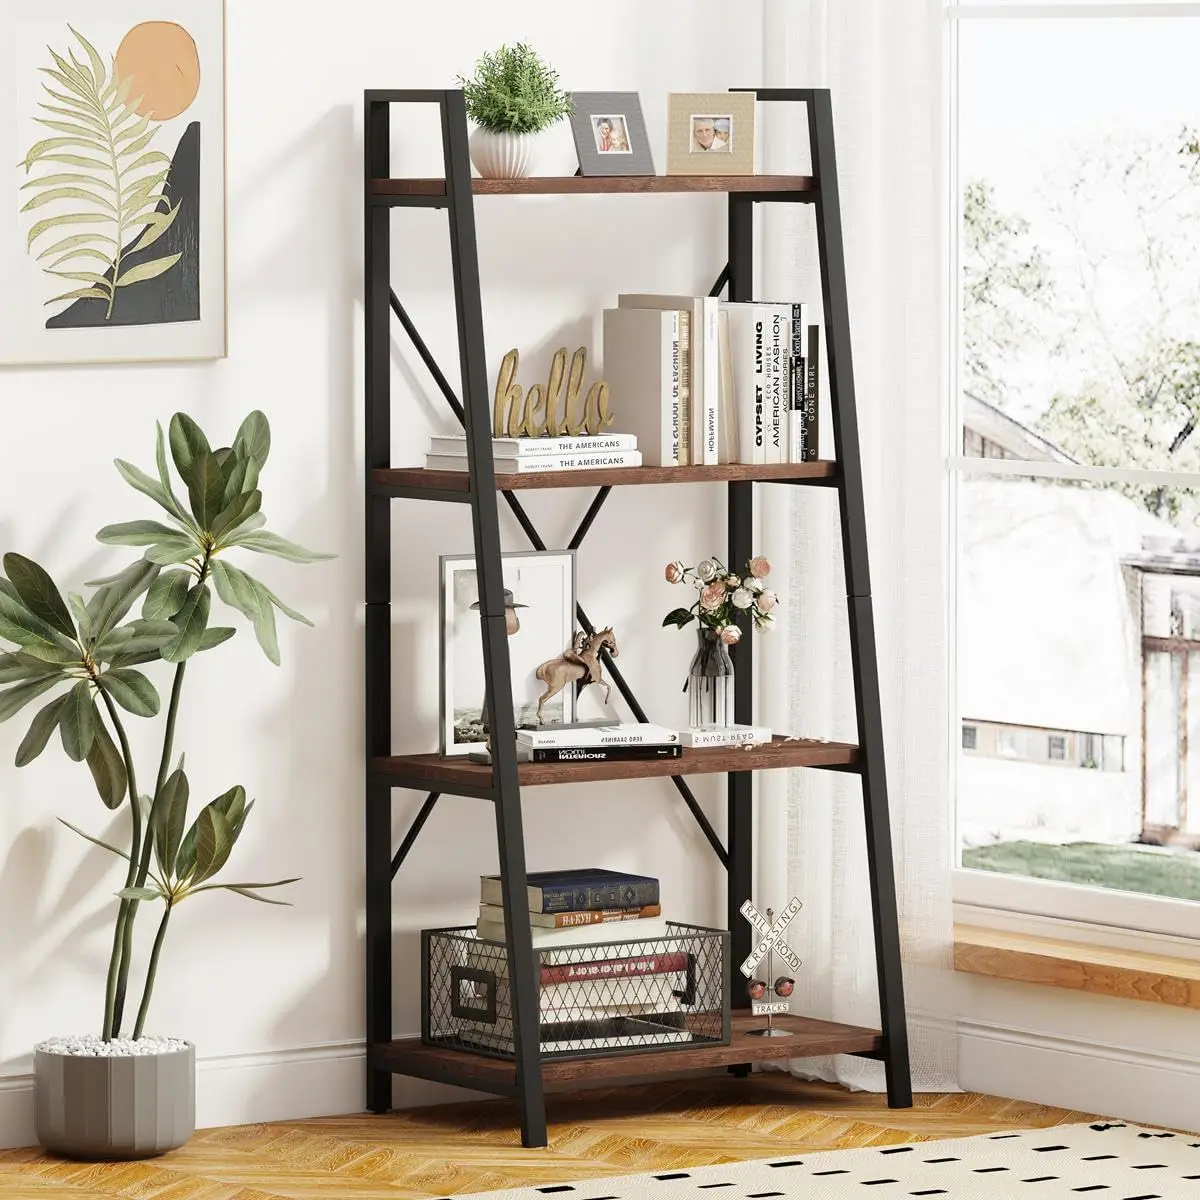 

BON AUGURE Industrial Ladder Shelf Bookcase, 4 Tier Rustic Ladder Bookshelf, Standing Leaning Book Shelves for Living Room